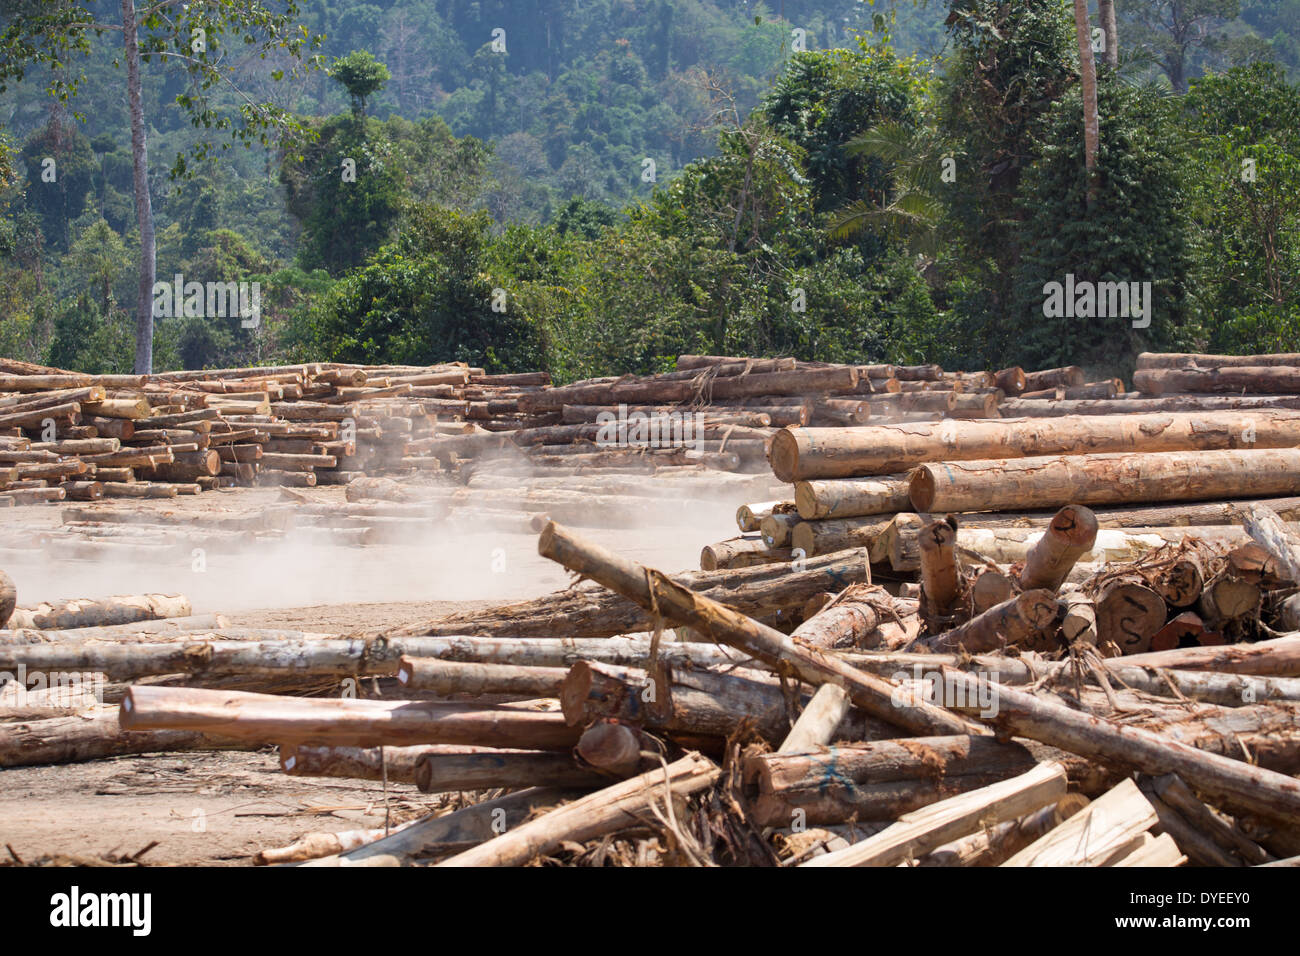 Gefälltem Holz, Baumstämmen, meldet sich in einem Holzfällerlager, umgeben von sekundären Regenwald, Provinz Pahang, Malaysia Stockfoto